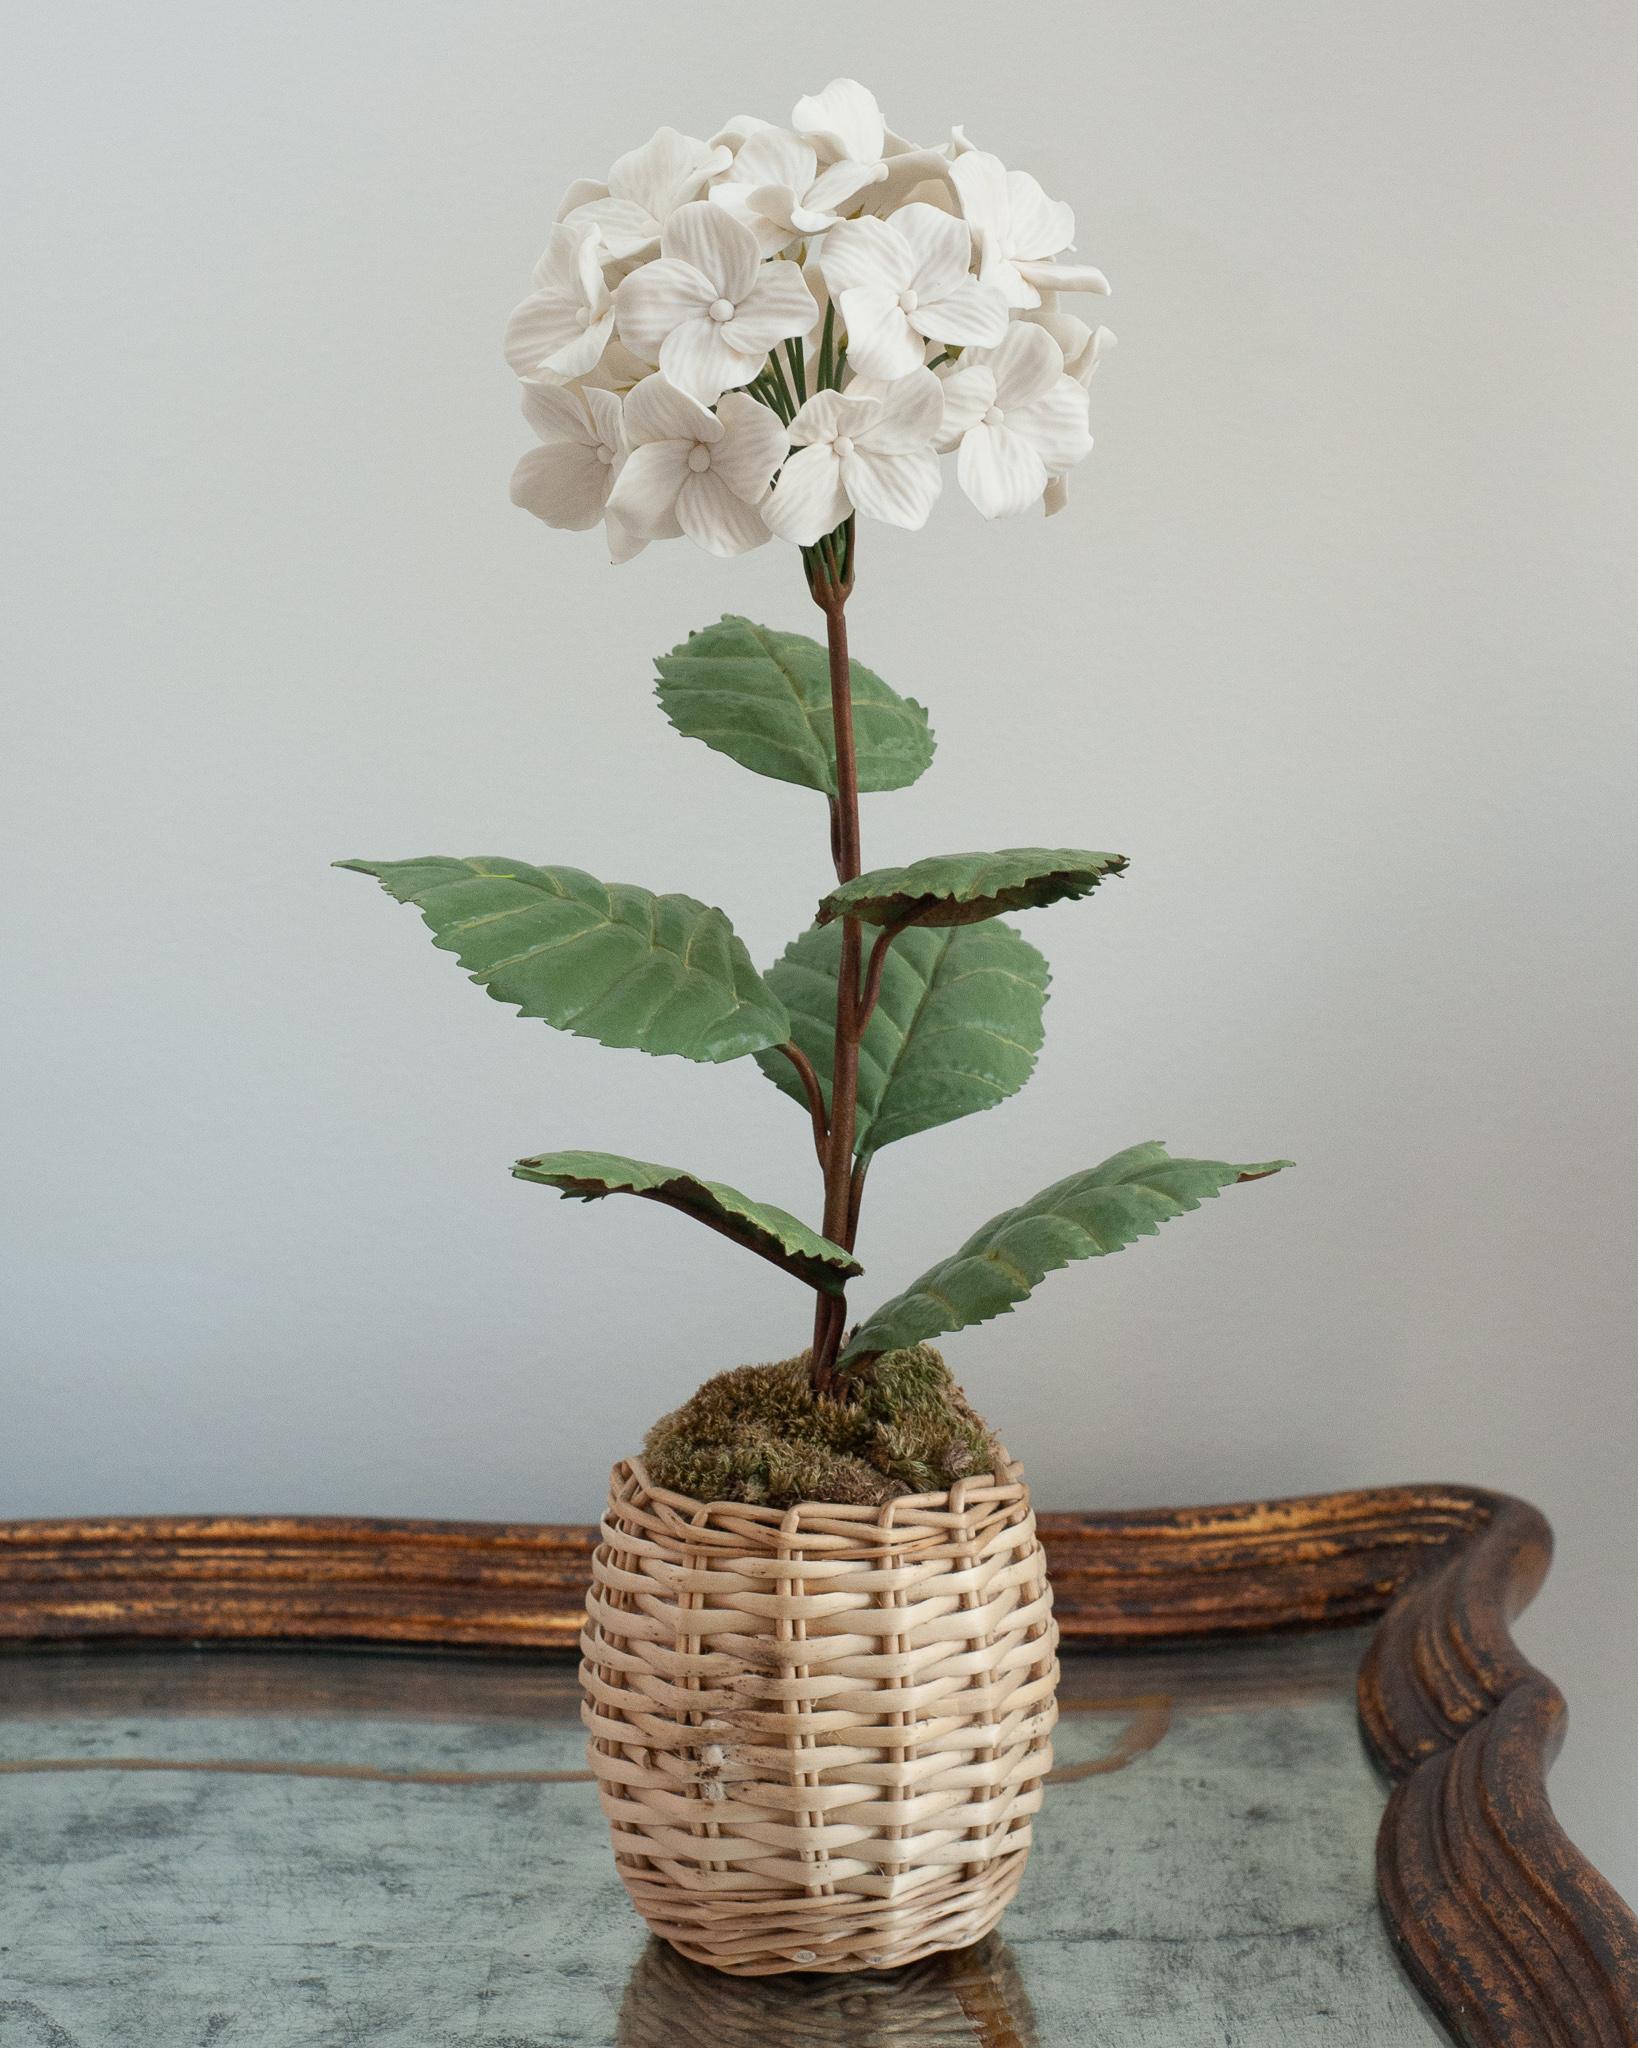 Embellissez votre table avec ces délicates fleurs en porcelaine de l'artiste français Samuel Mazy. Cet hortensia blanc est fait à la main en porcelaine biscuit, avec des feuilles et des tiges en cuivre peintes à la main, et est placé dans un pot en